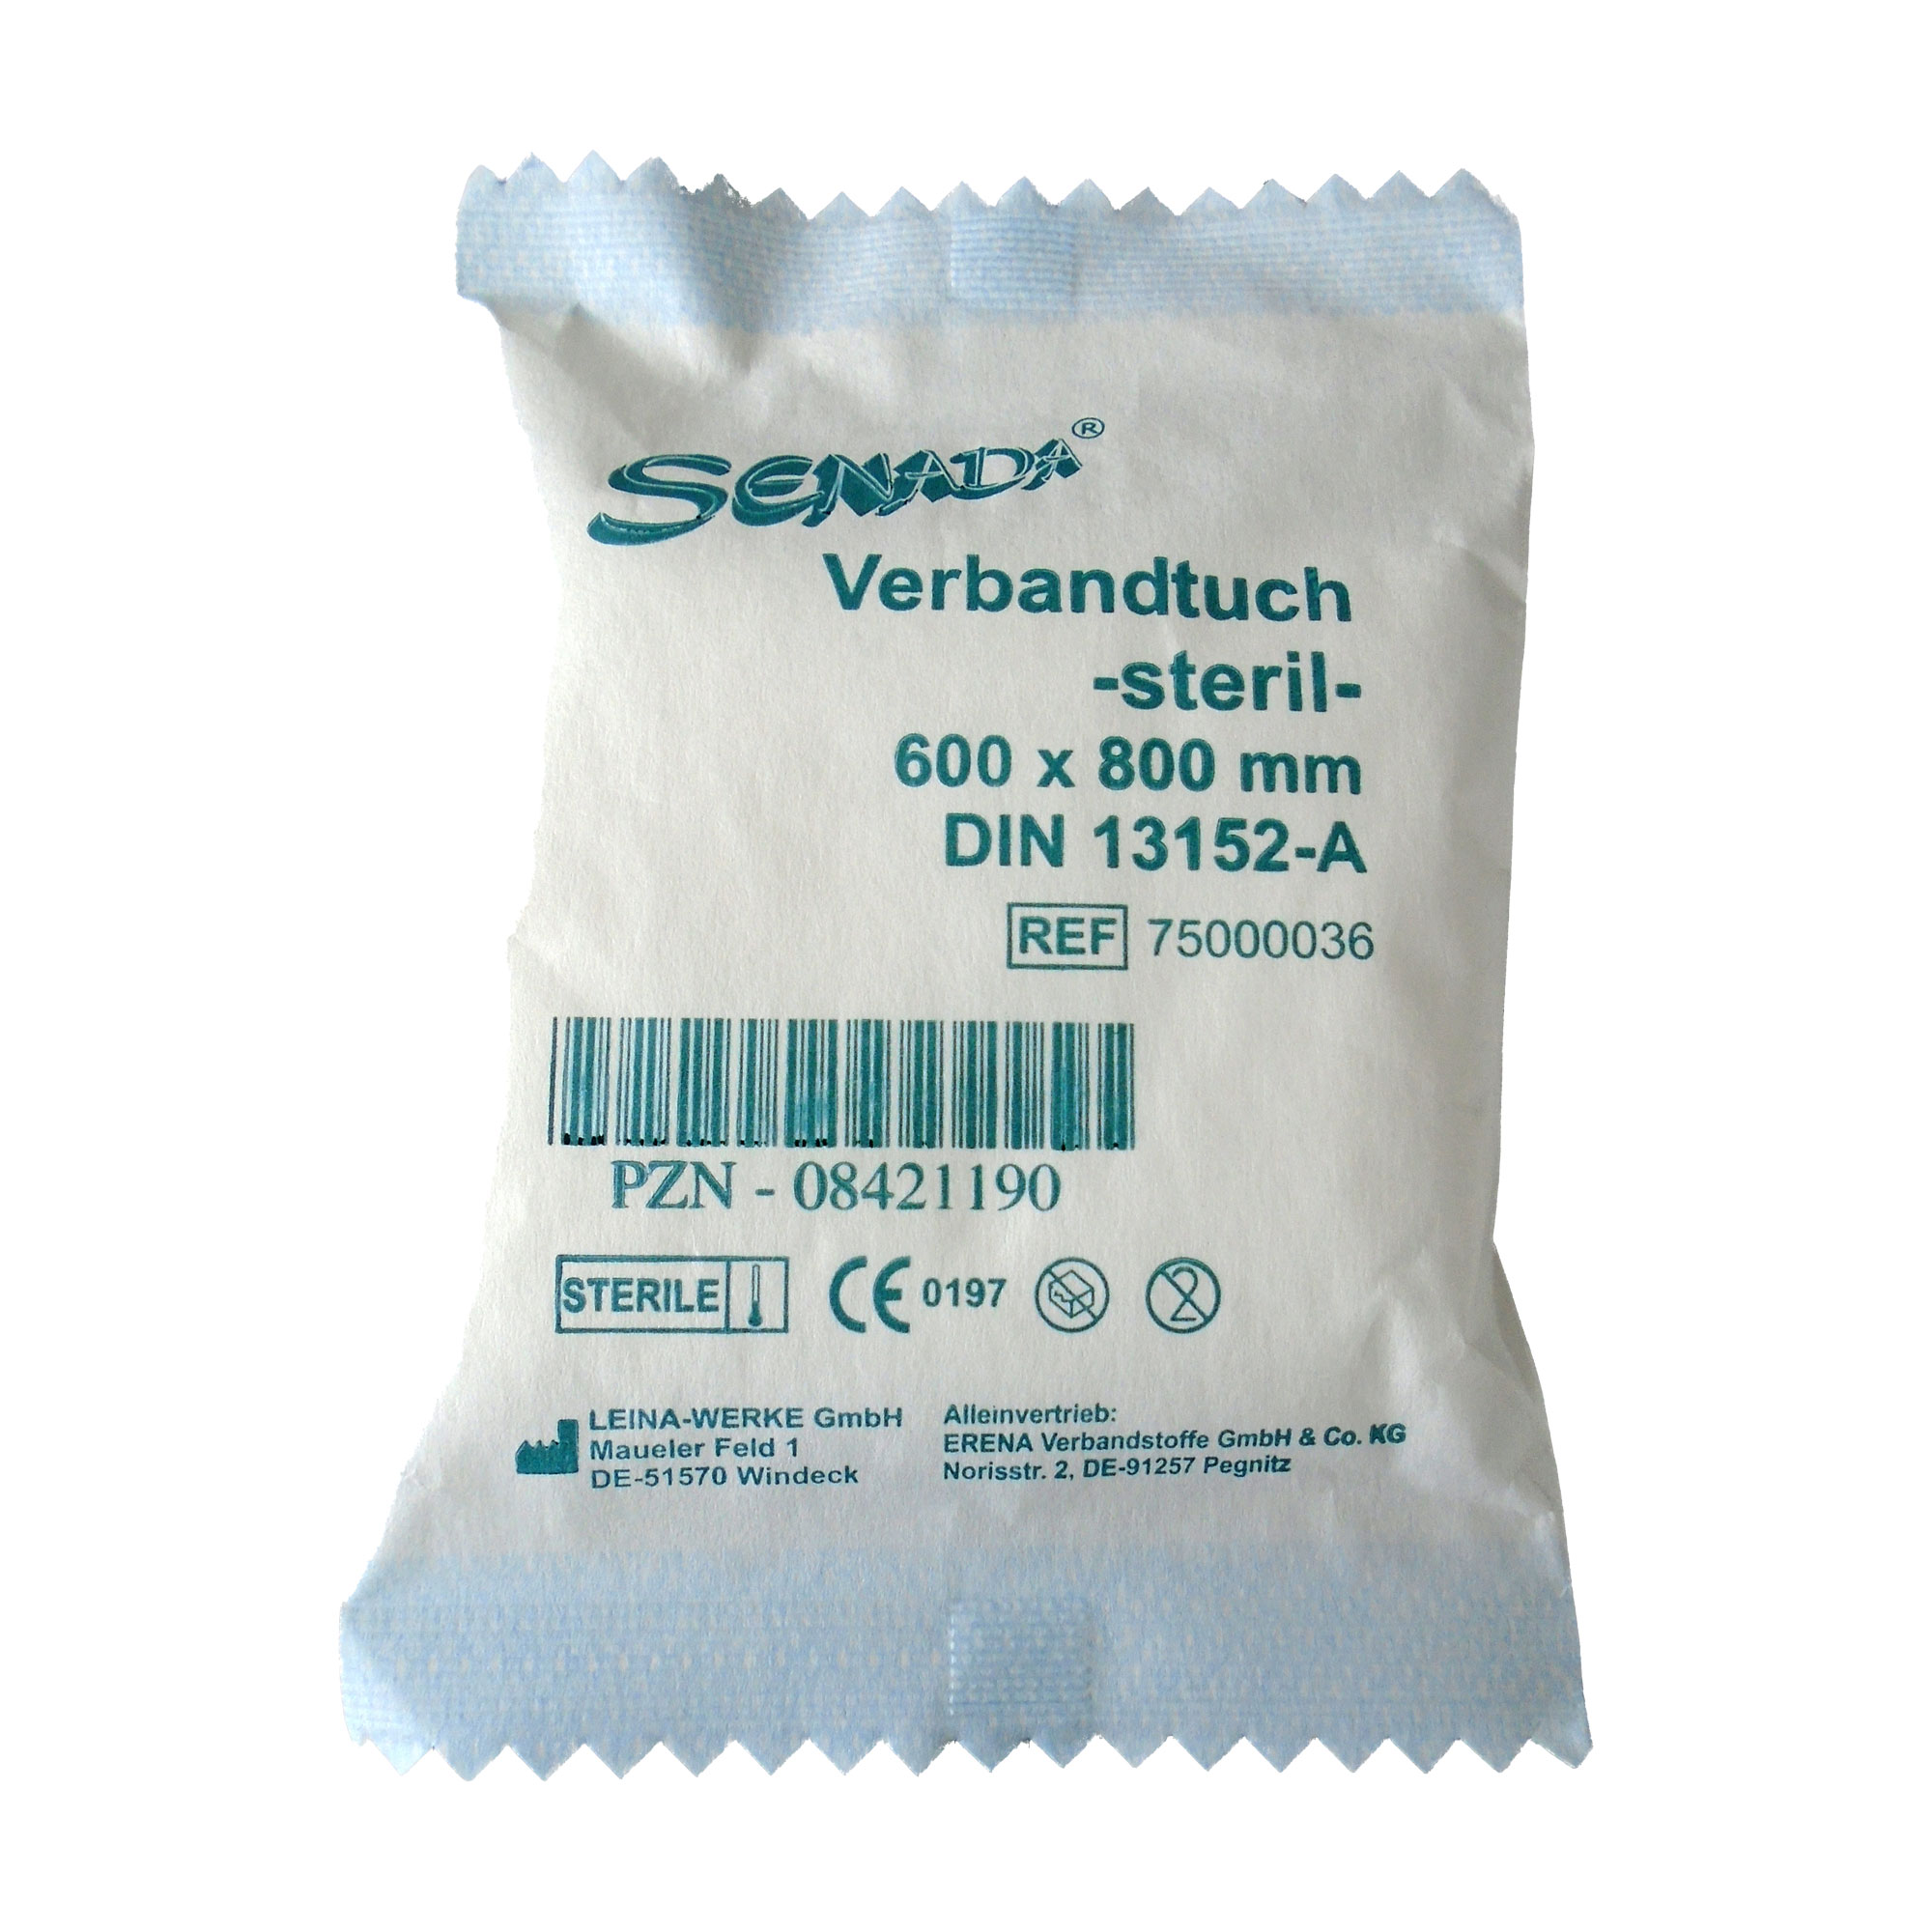 Für sterile Verbandtücher, die insbesondere im Erste-Hilfe-Bereich verwendet werden.